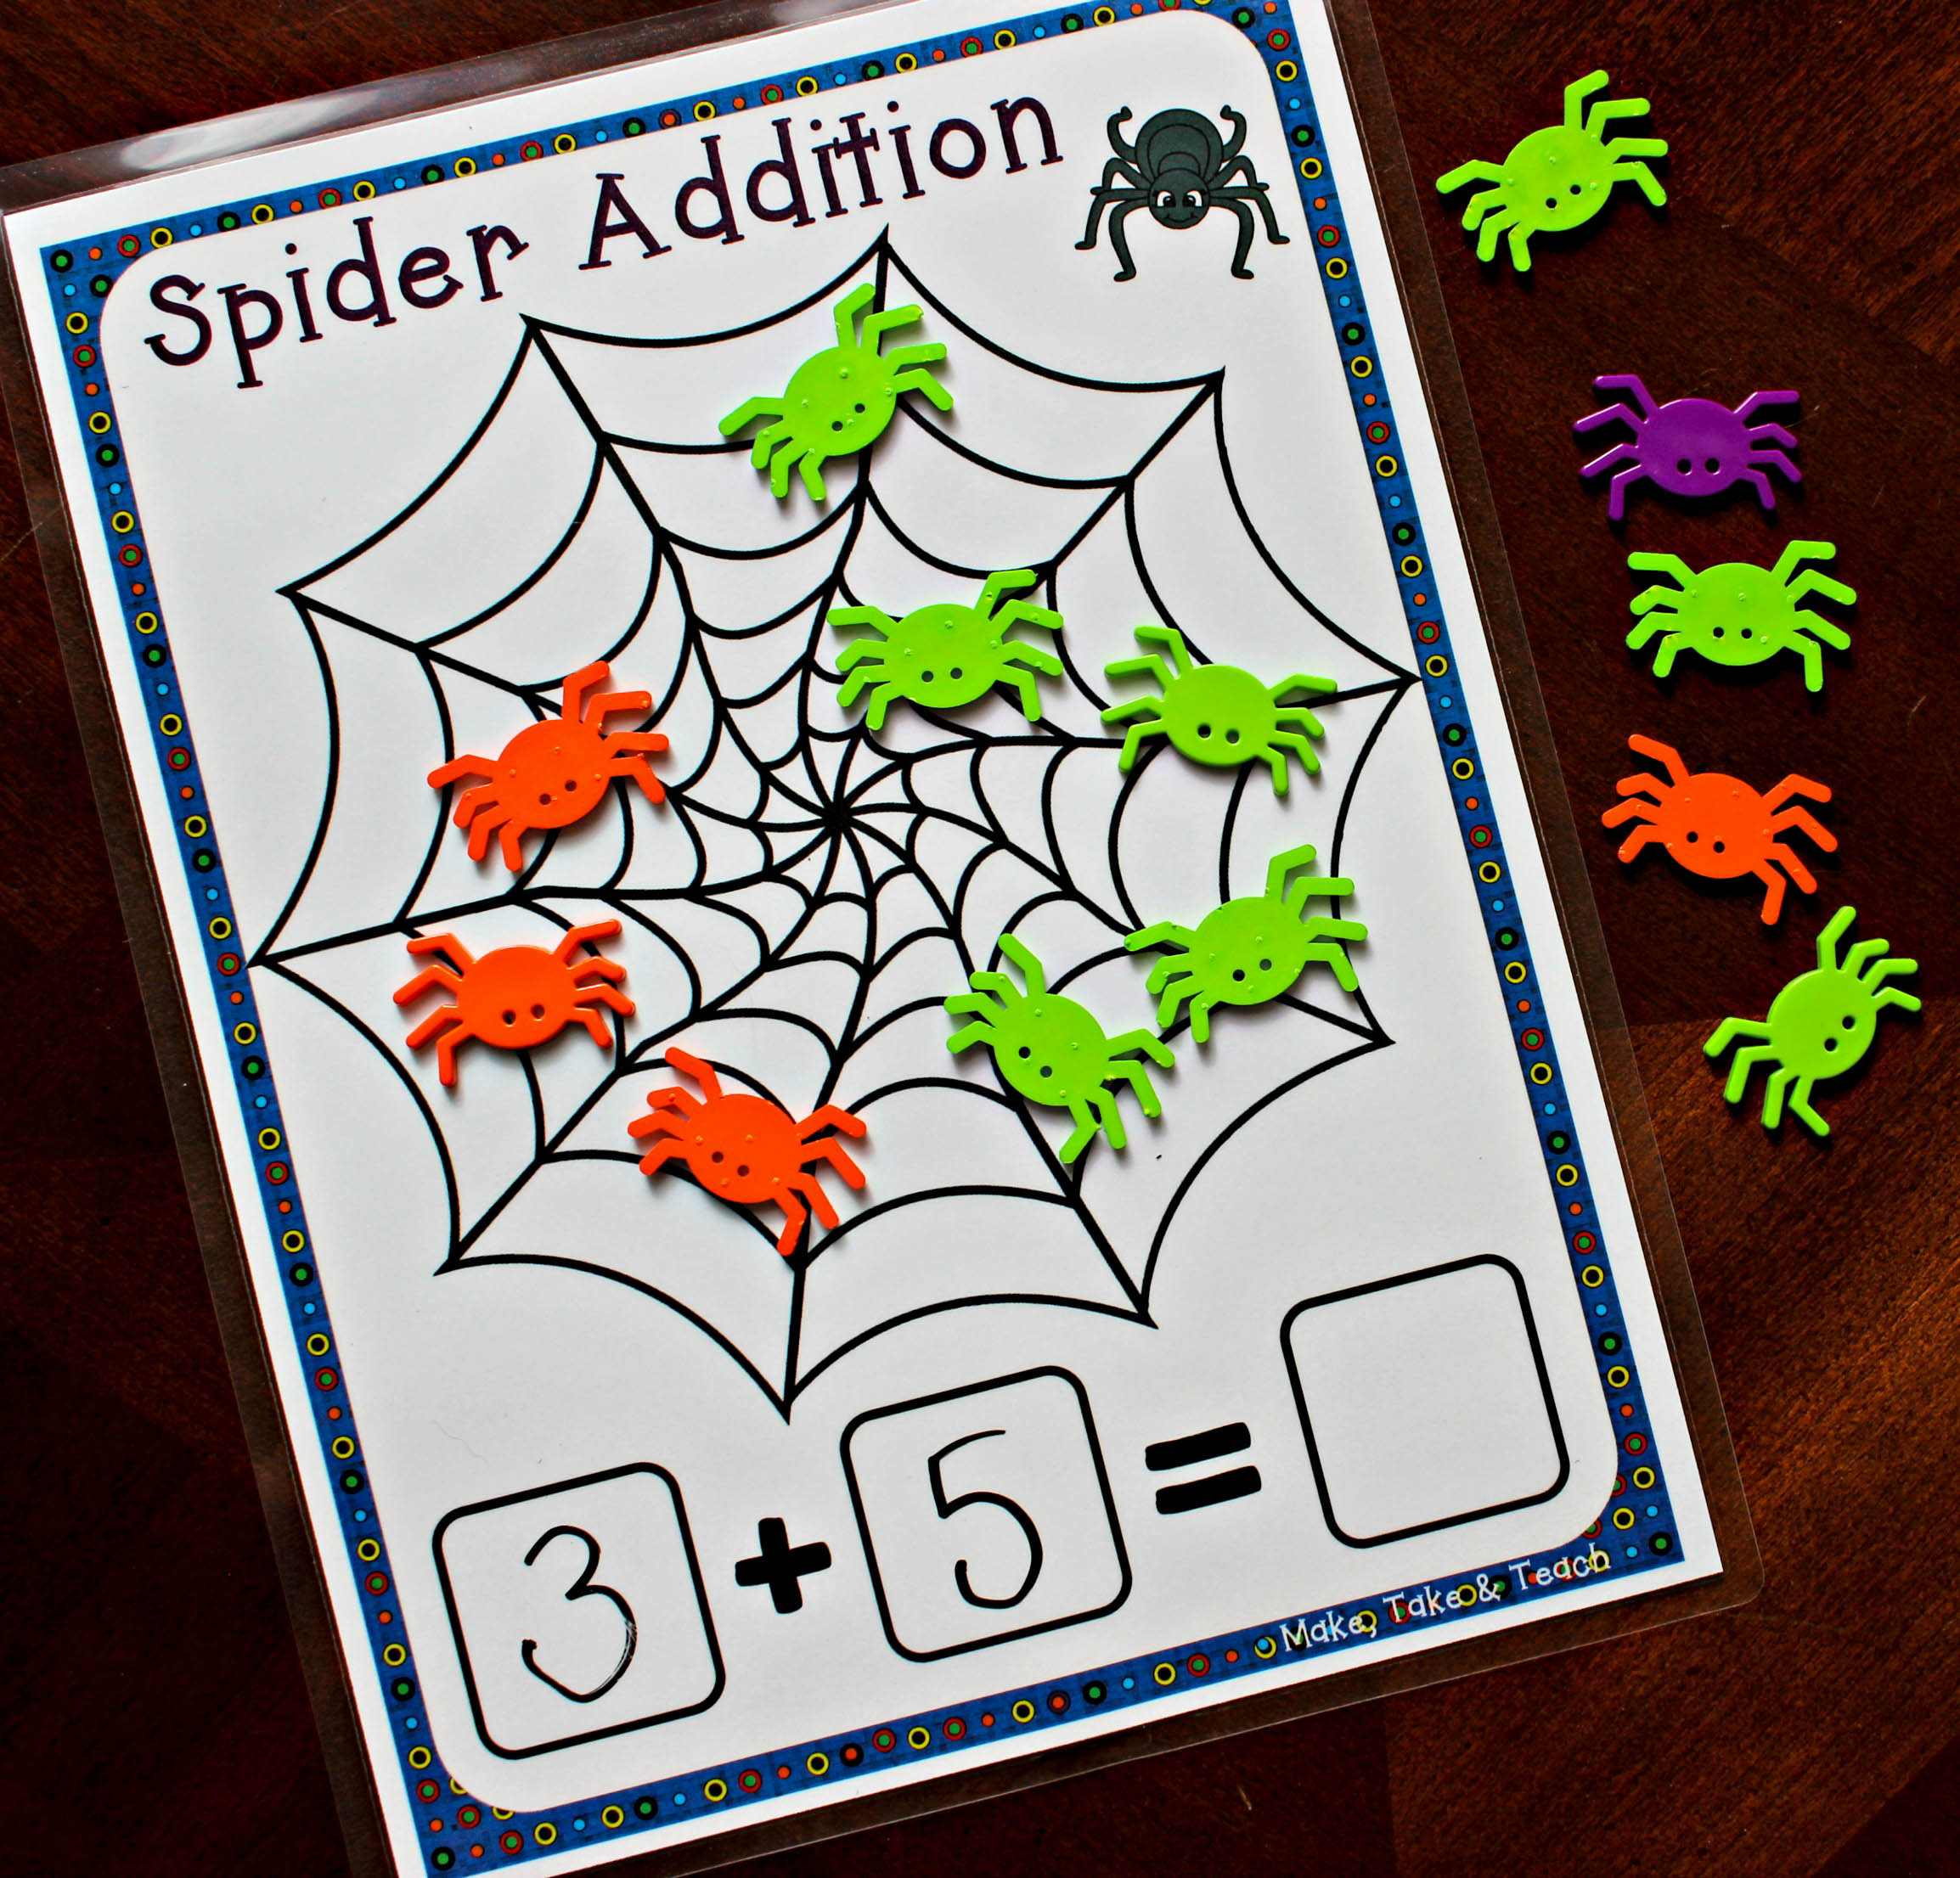 Spider Addition FREEBIE! - Make Take & Teach